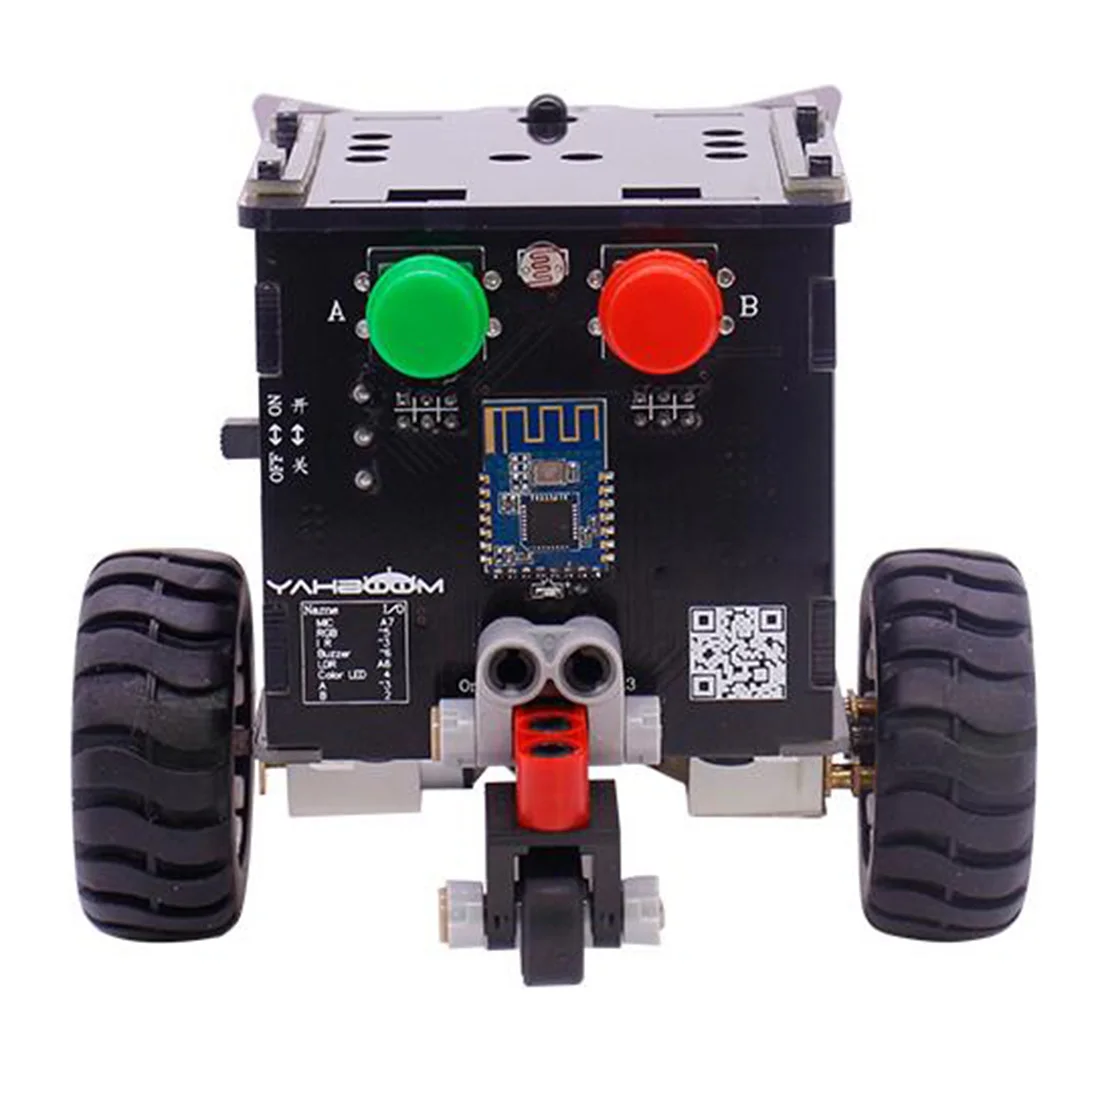 Горячий 1 набор стандартная версия Omibox царапина программируемый робот автомобильный комплект